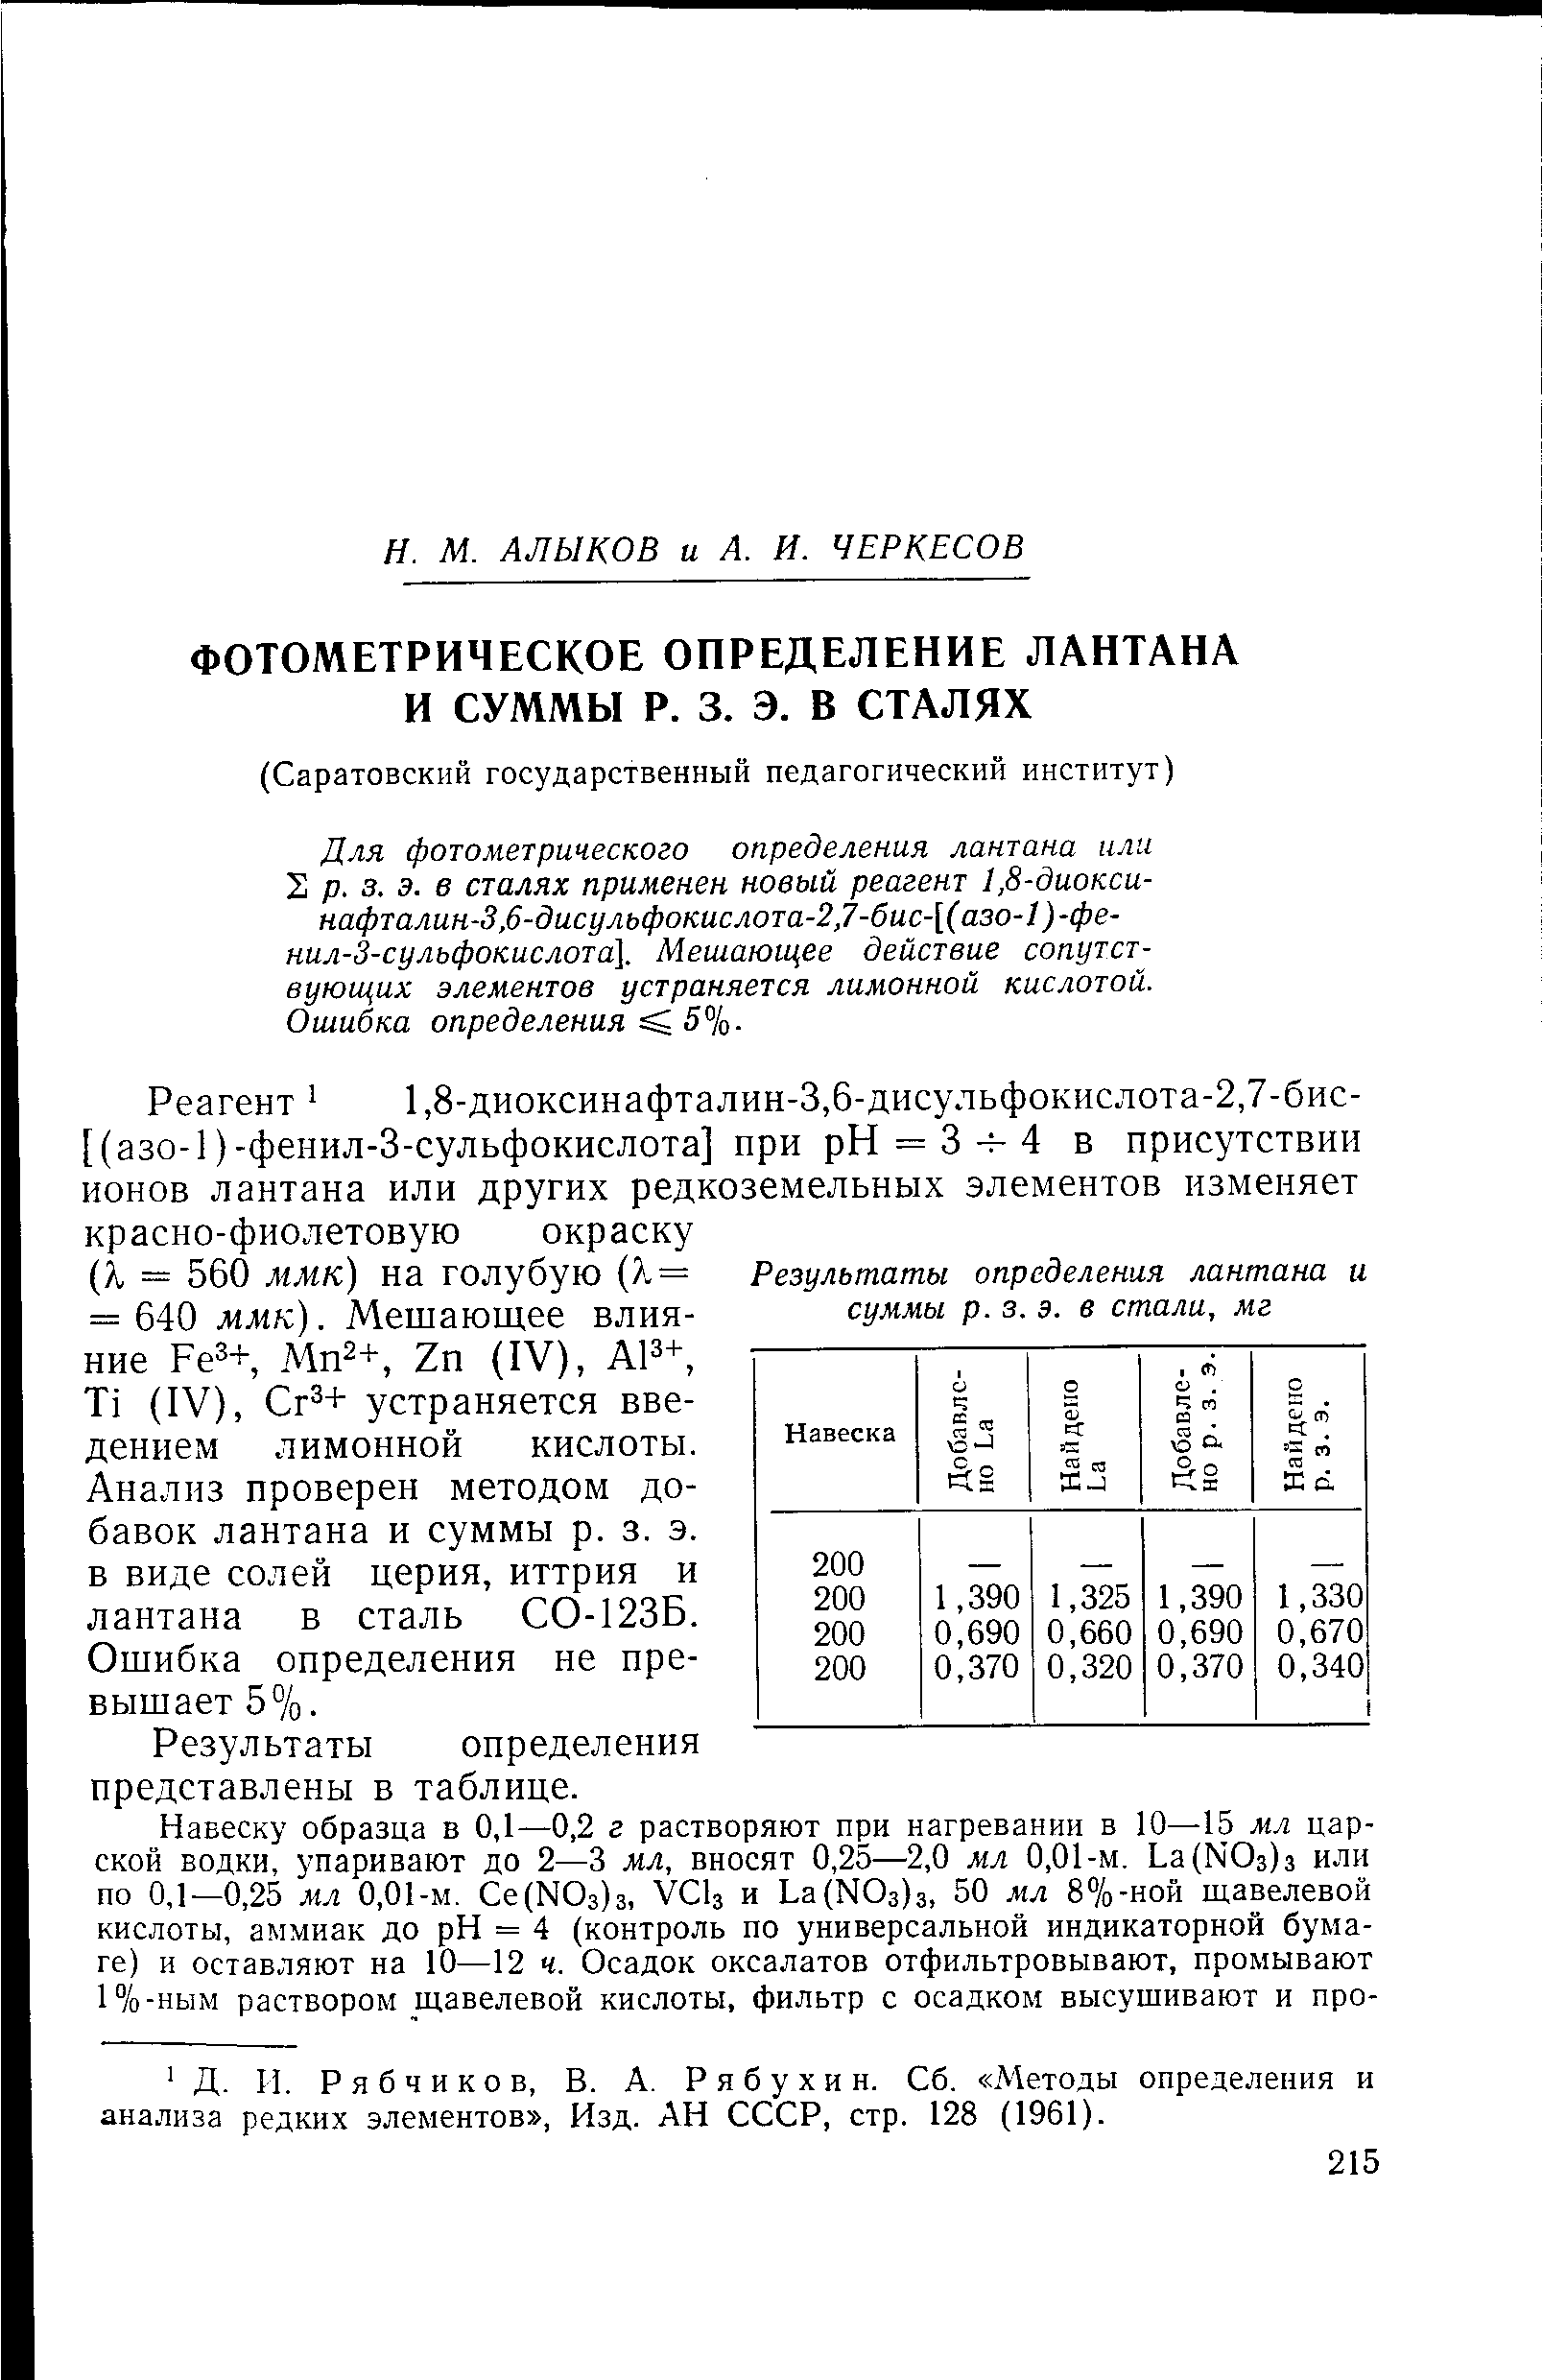 Реагент 1,8-диоксинафталин-3,6-дисульфокислота-2,7-бис-[(азо-1)-фенил-3-сульфокислота] при рН = 3 ч-4 в присутствии ионов лантана или других редкоземельных элементов изменяет красно-фиолетовую окраску (i = 560 ммк) на голубую ( .= = 640 ммк). Мешающее влияние Fe3+, Mn2+, Zn (IV), А13+, Ti (IV), Сг3+ устраняется введением лимонной кислоты. Анализ проверен методом добавок лантана и суммы р. з. э. в виде солей церия, иттрия и лантана в сталь СО-123Б. Ошибка определения не превышает 5%.